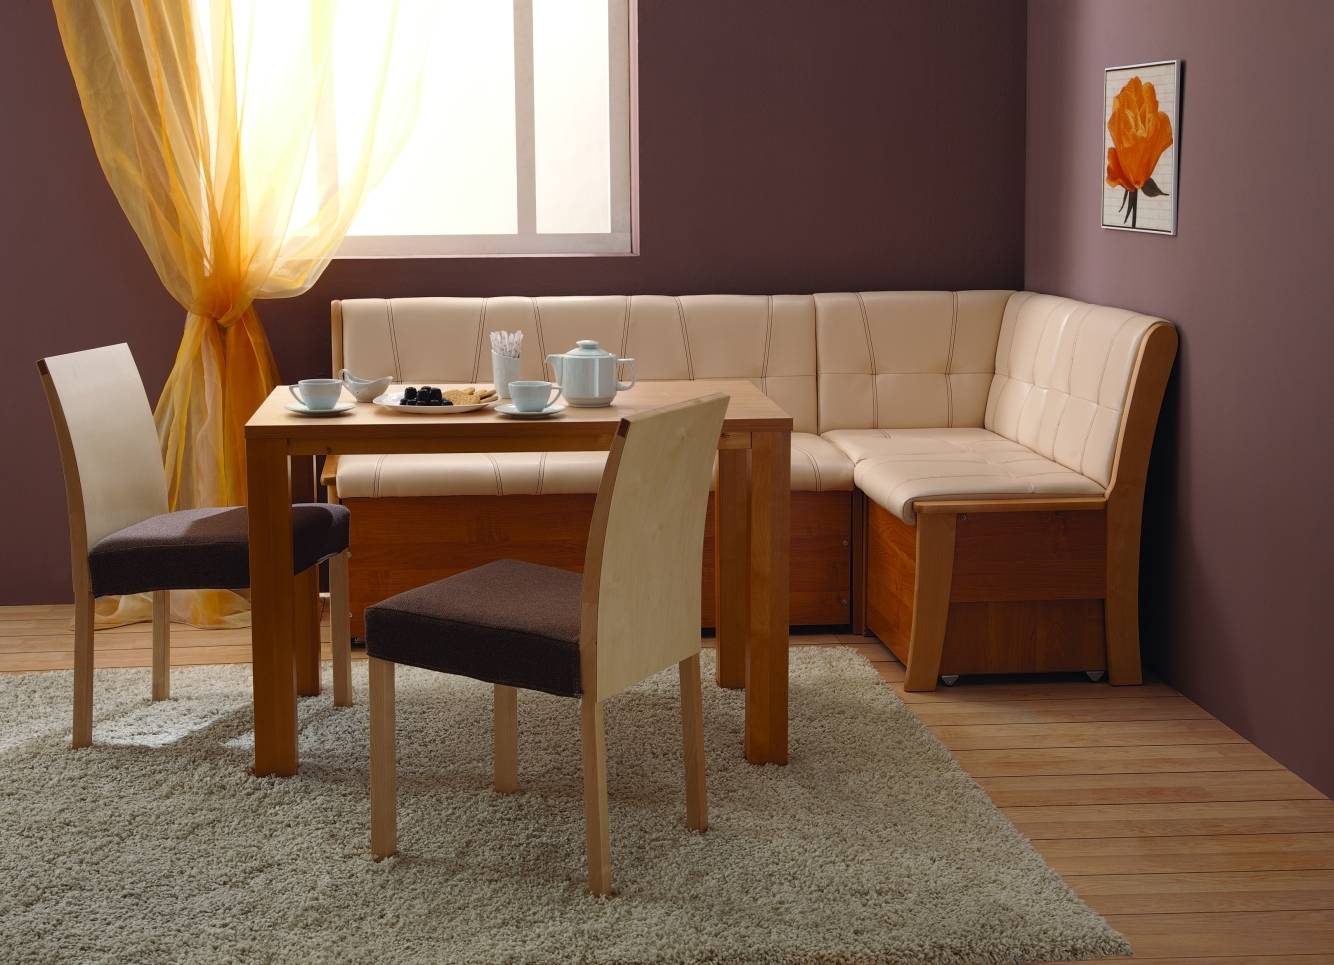 Угловые диваны для кухни: со спальным местом, советы при выборе, фото